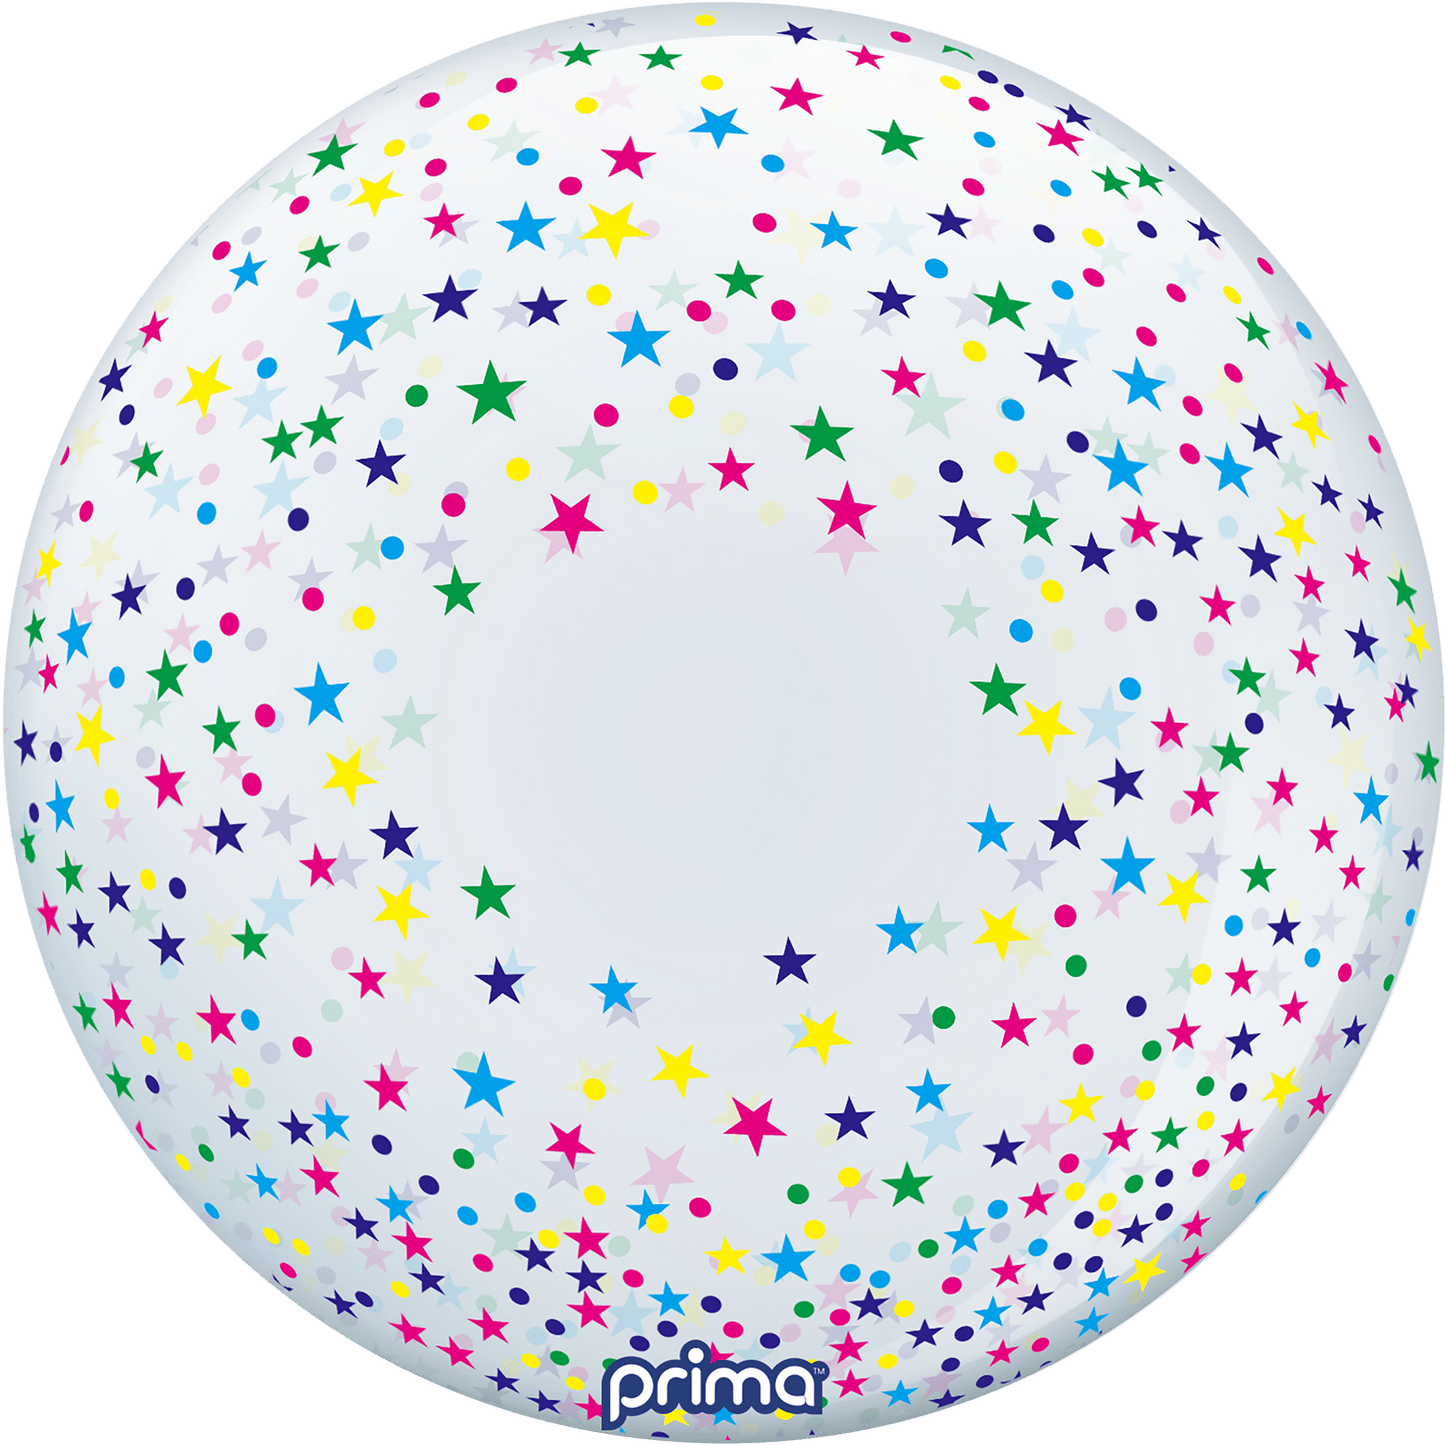 PS-CSTR-22-50-1 - 20” Colorful Confetti Stars Sphere™ - PremiumConwin B2B Ordering Portal - Prima